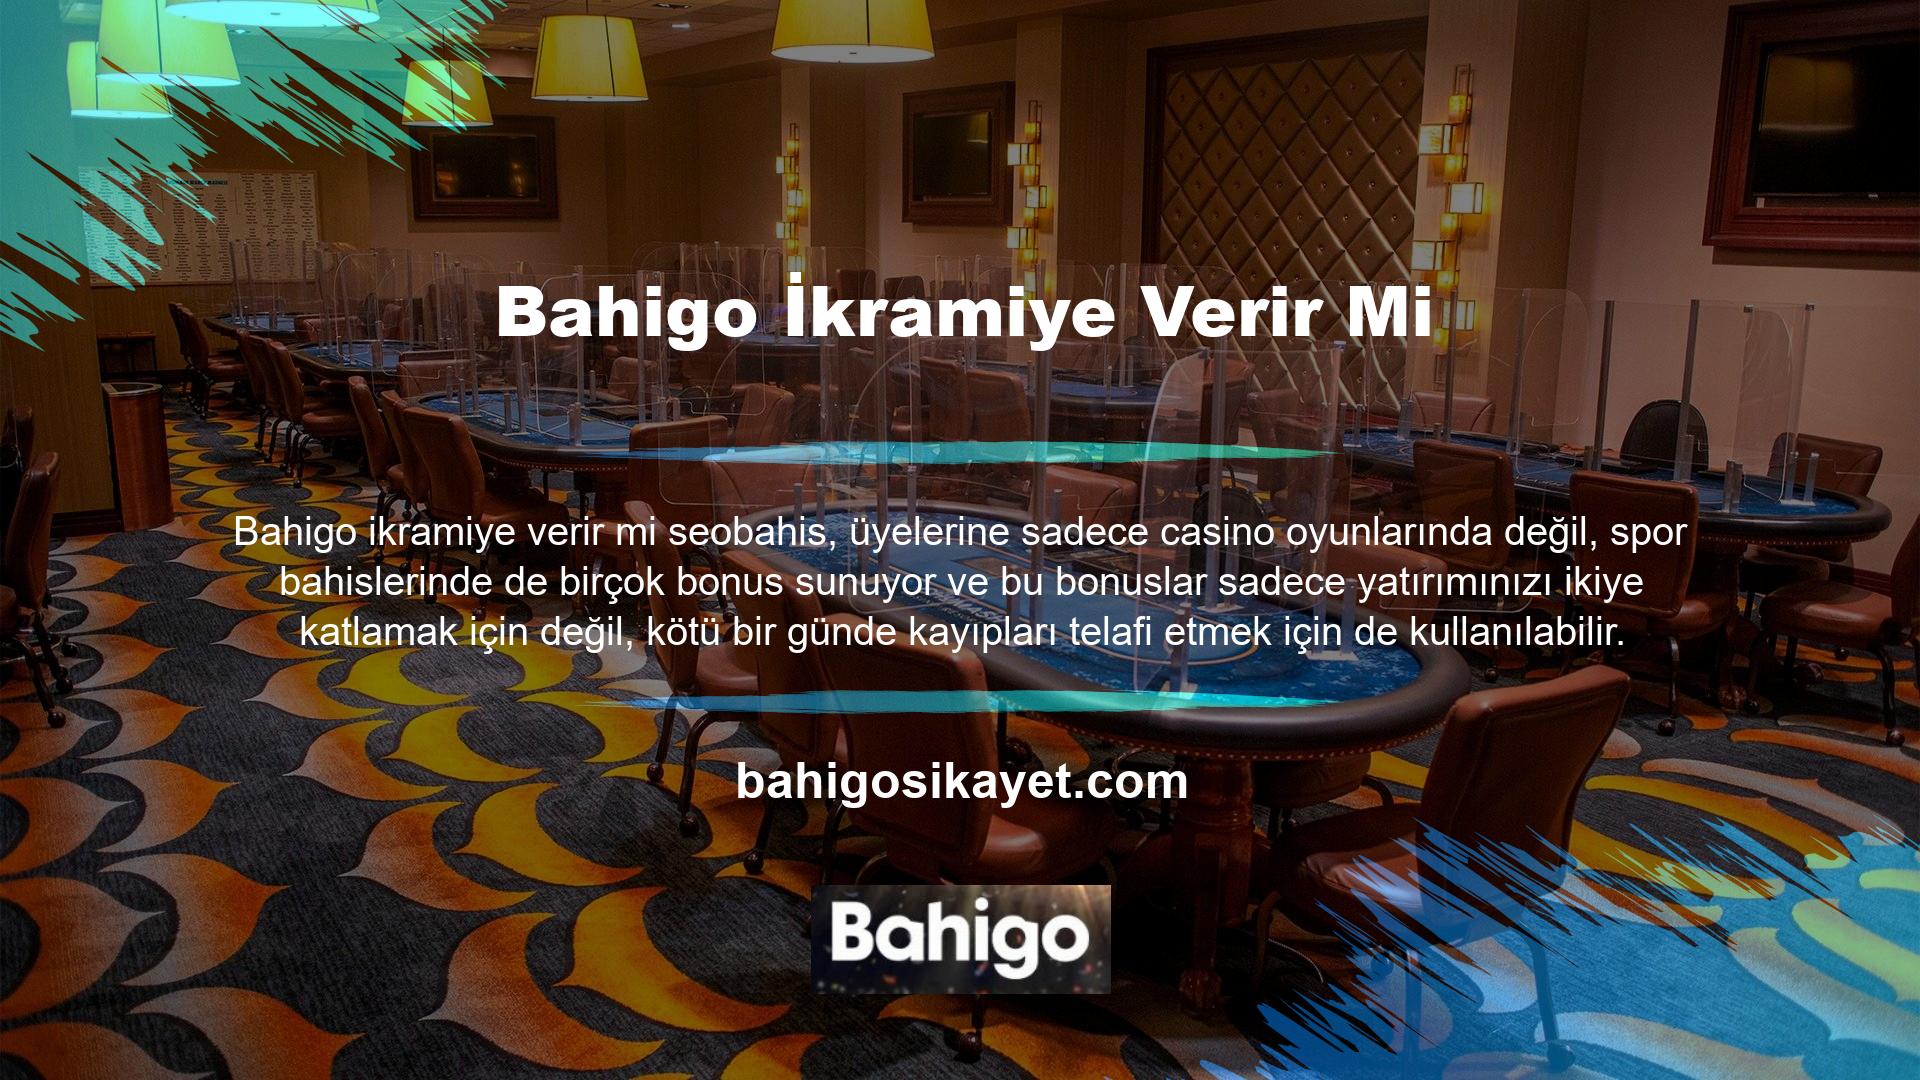 Bahigo bir diğer benzersiz özelliği de bu bonusların ortalama olarak talep edildikten dakikalar sonra üyelerin hesaplarına yüklenmesidir